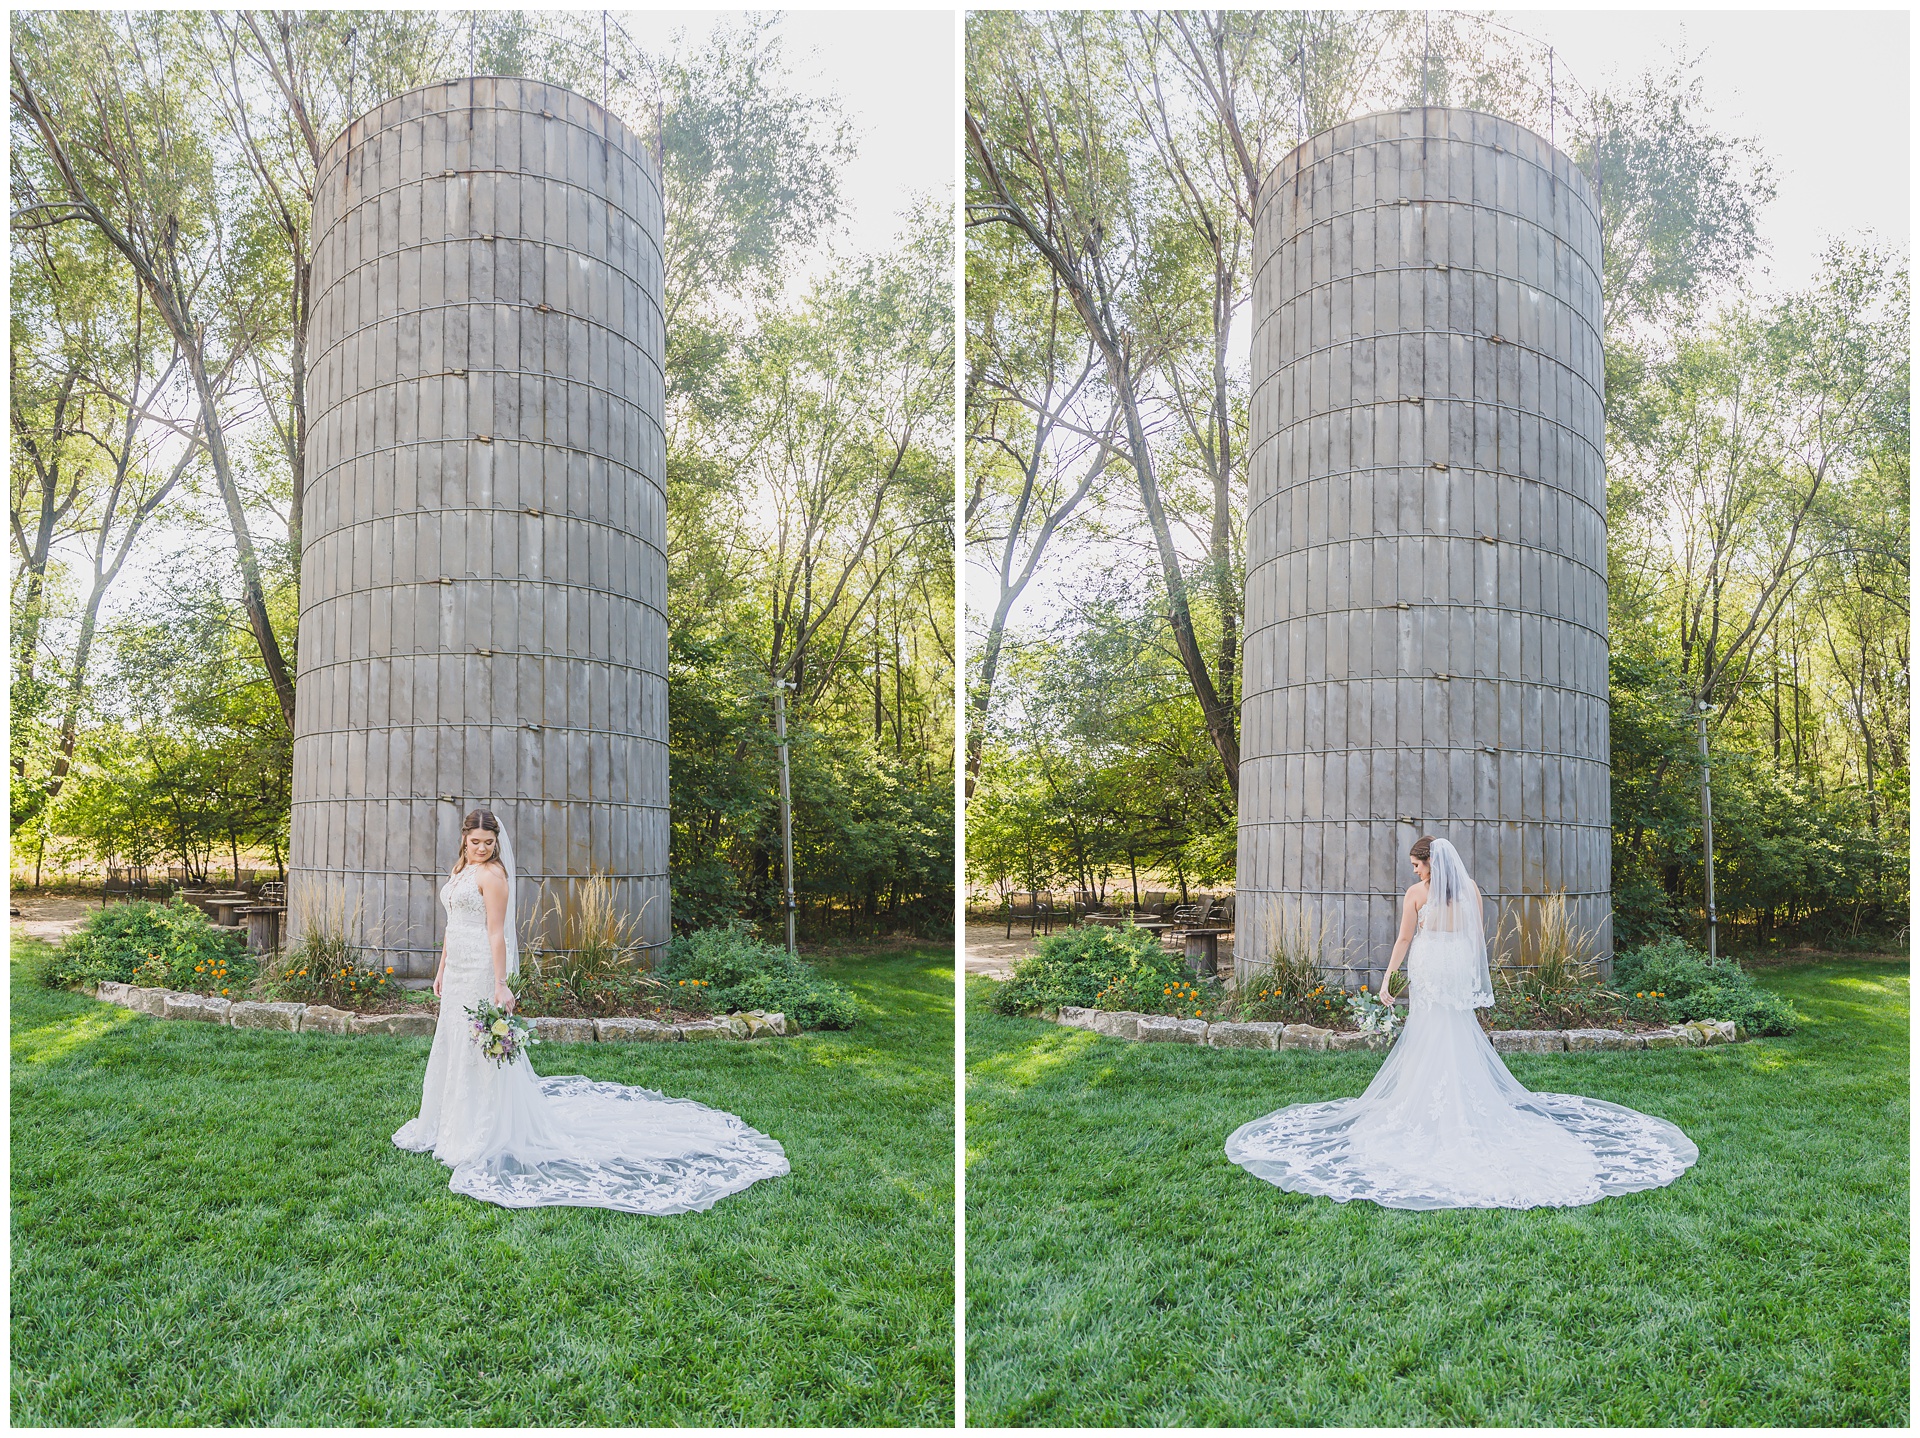 Wedding photography at Emma Creek Barn in Hesston, Kansas, by Kansas City wedding photographers Wisdom-Watson Weddings.